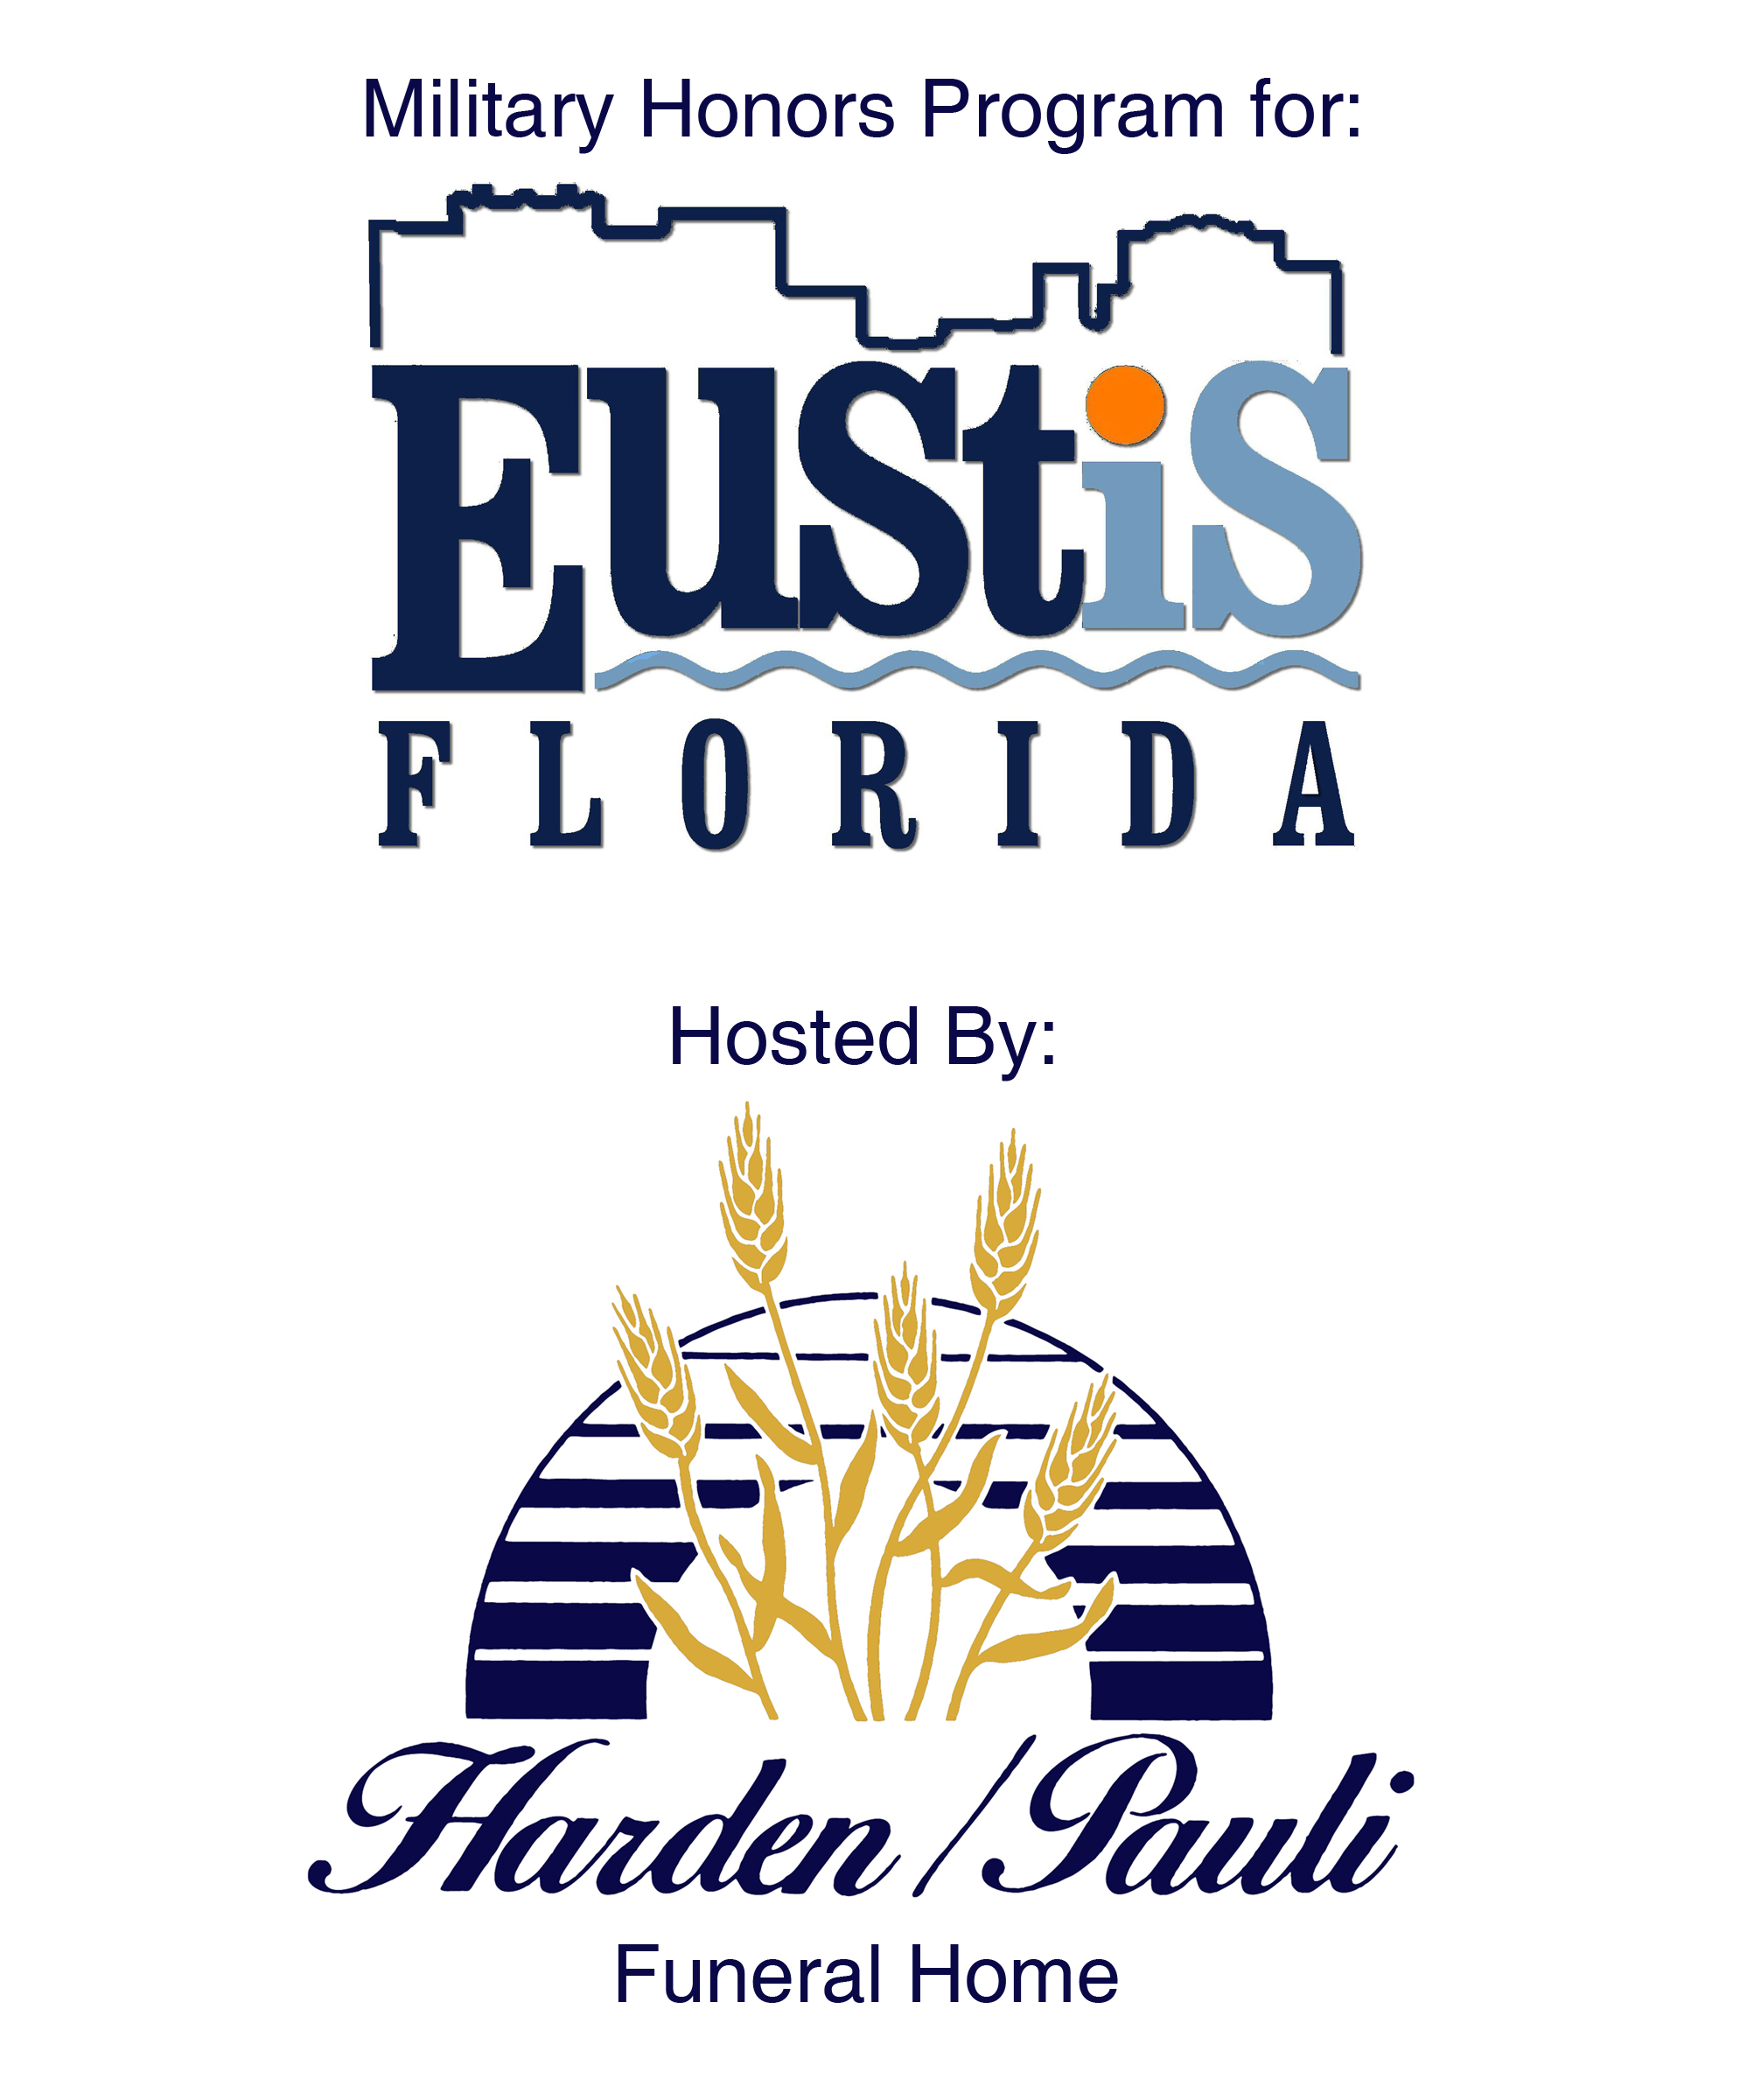 Eustis Florida Program